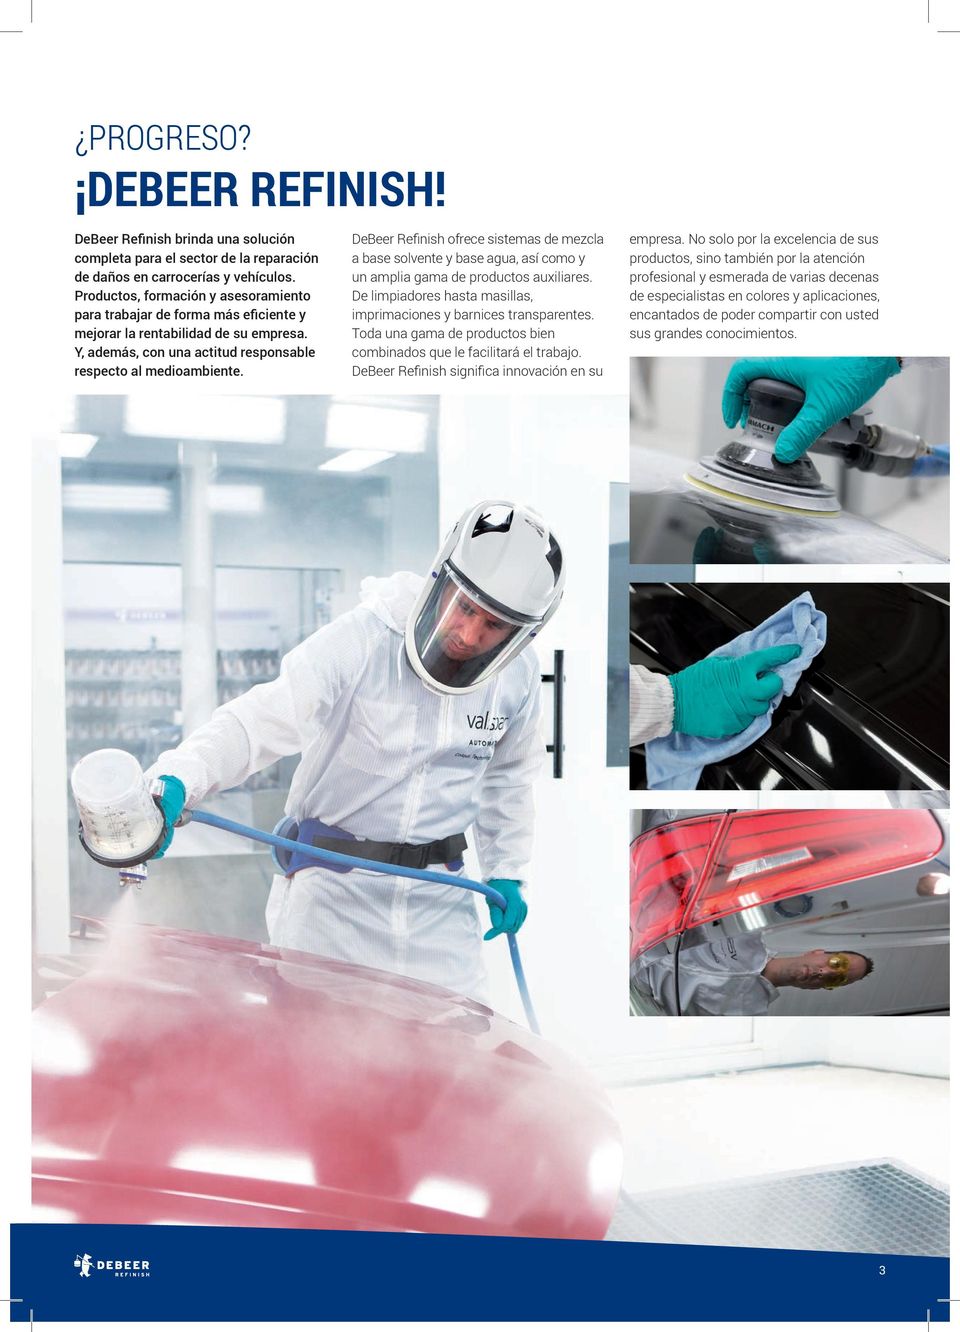 DeBeer Refinish ofrece sistemas de mezcla a base solvente y base agua, así como y un amplia gama de productos auxiliares. De limpiadores hasta masillas, imprimaciones y barnices transparentes.